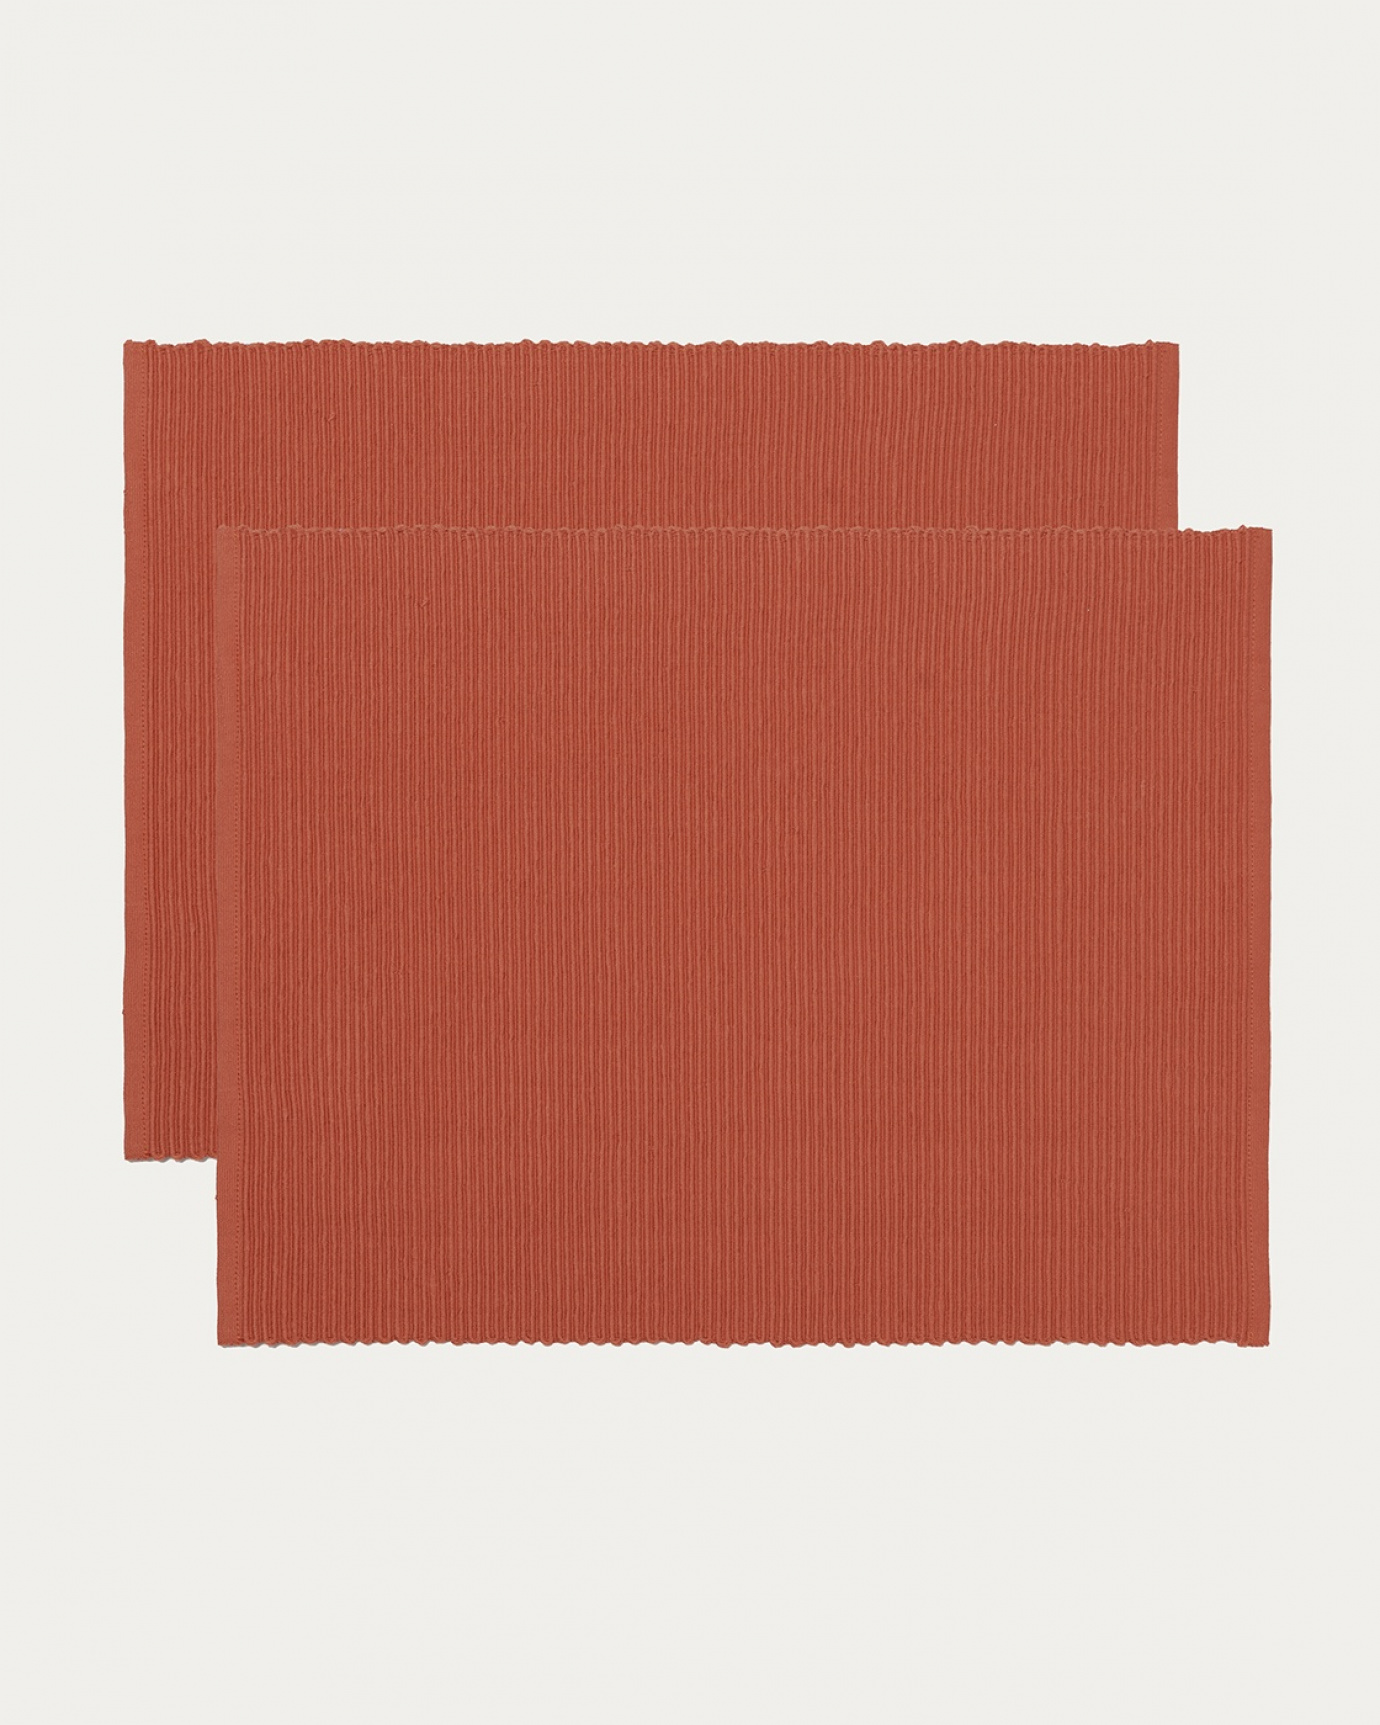 Image du produit set de table UNI orange rouillé en coton doux de qualité côtelée de LINUM DESIGN. Taille 35 x 46 cm et vendu en lot de 2.